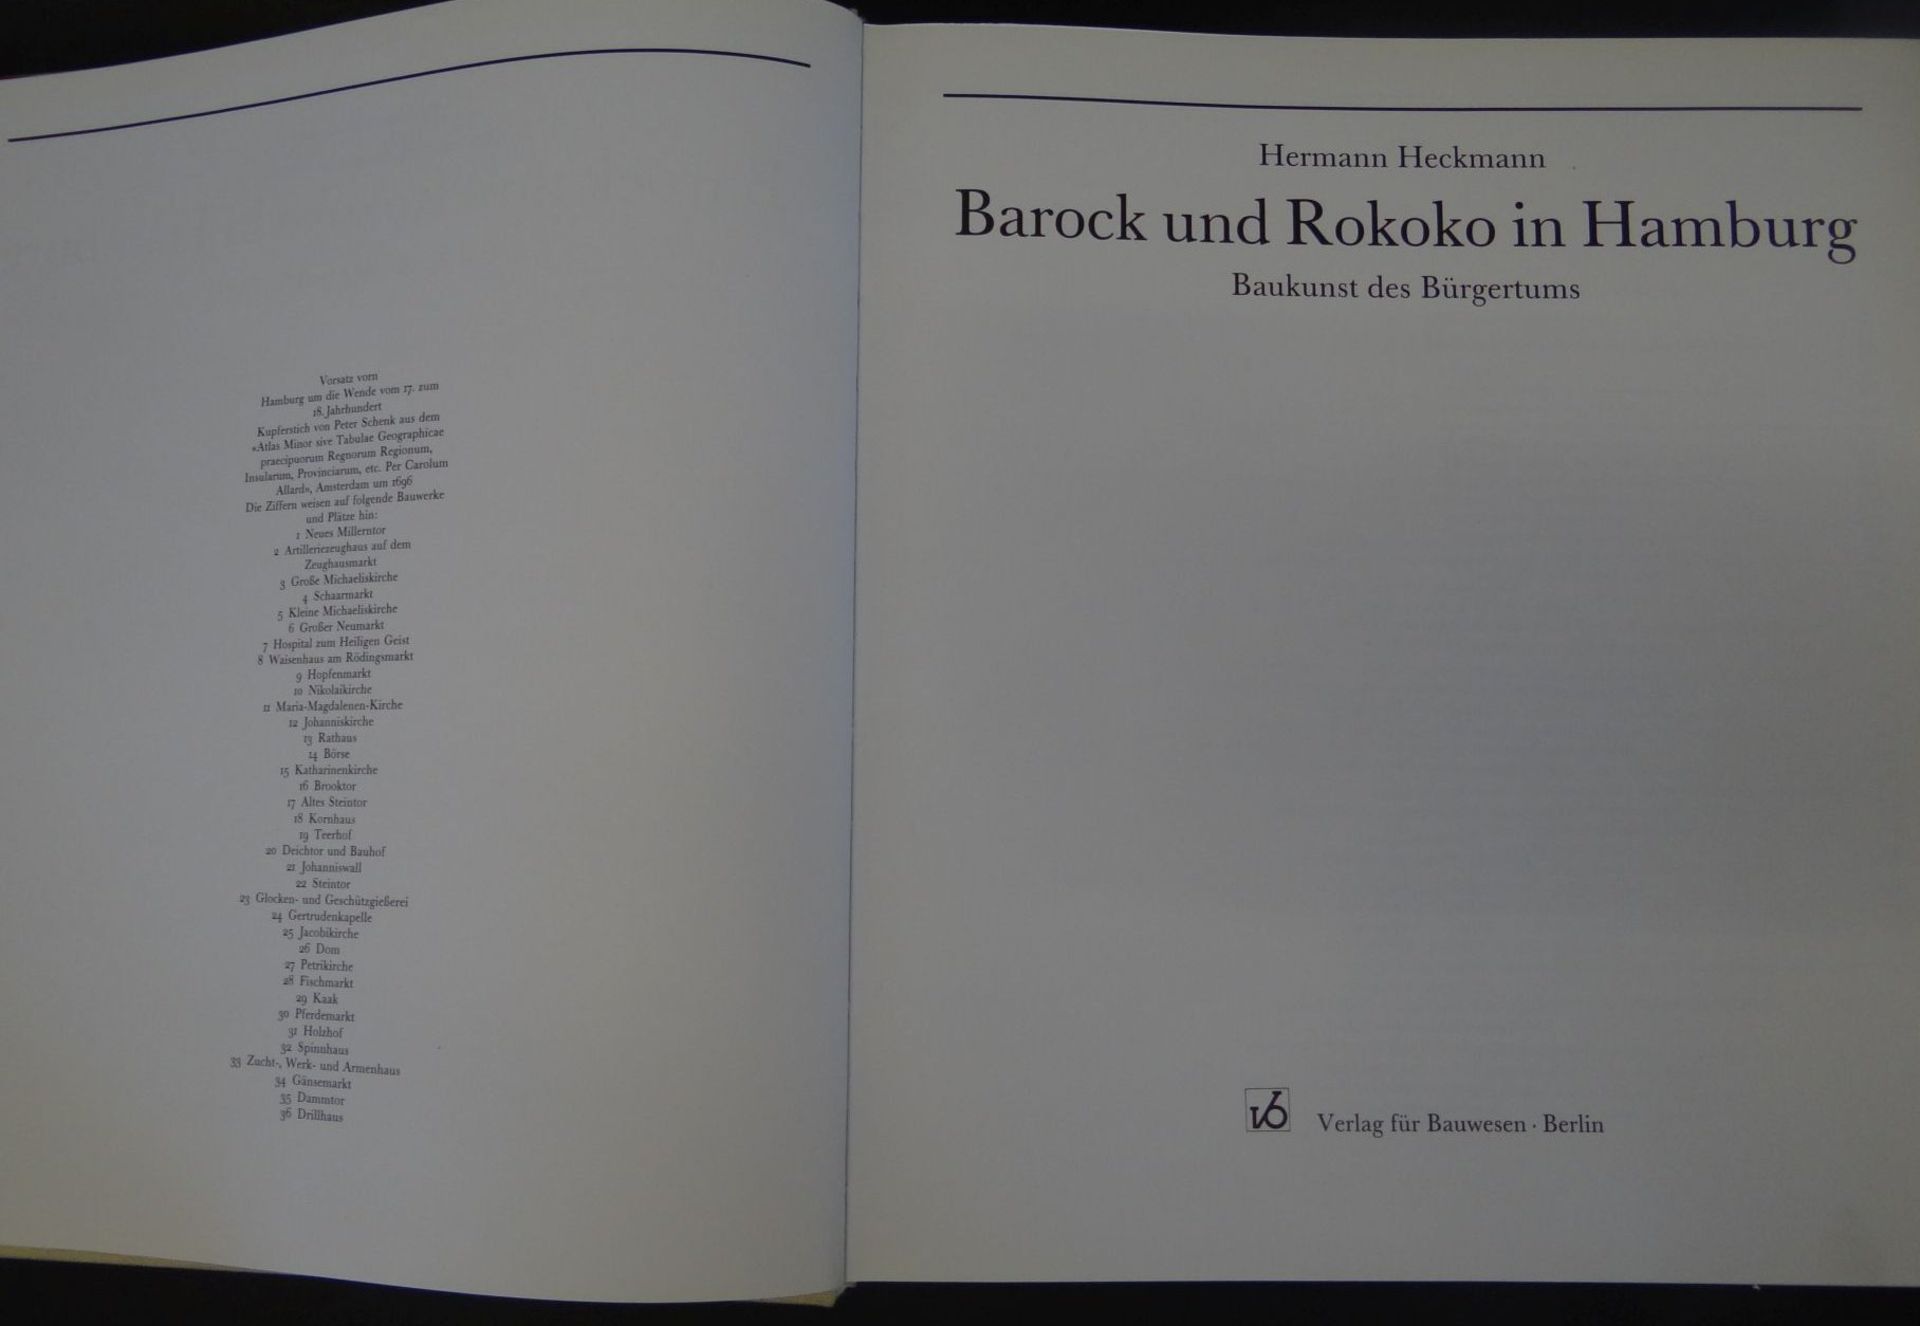 Grossbildband "Barock und Rokoko in Hamburg", guter Zustand - Bild 3 aus 6